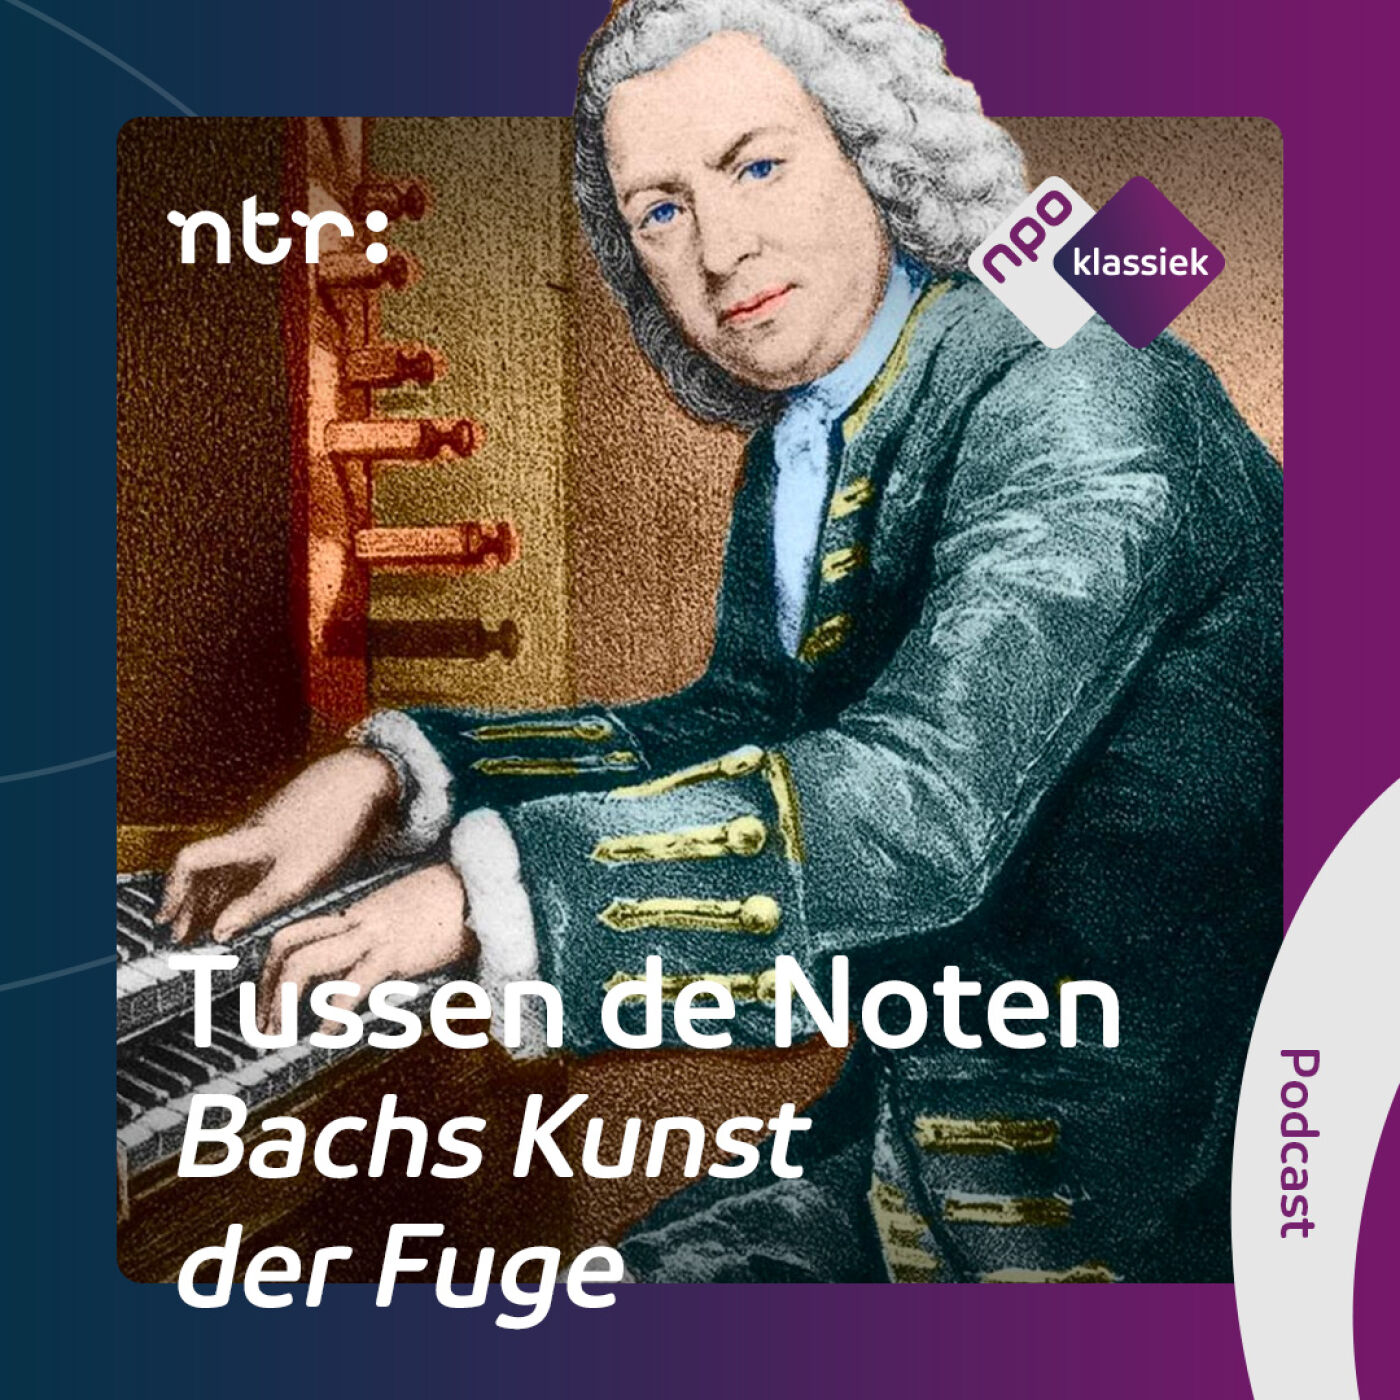 #2 - Bachs Kunst der Fuge: Het échte werk - 2. Omgekeerd, vergroot, verdraaid en verkleind (S04)